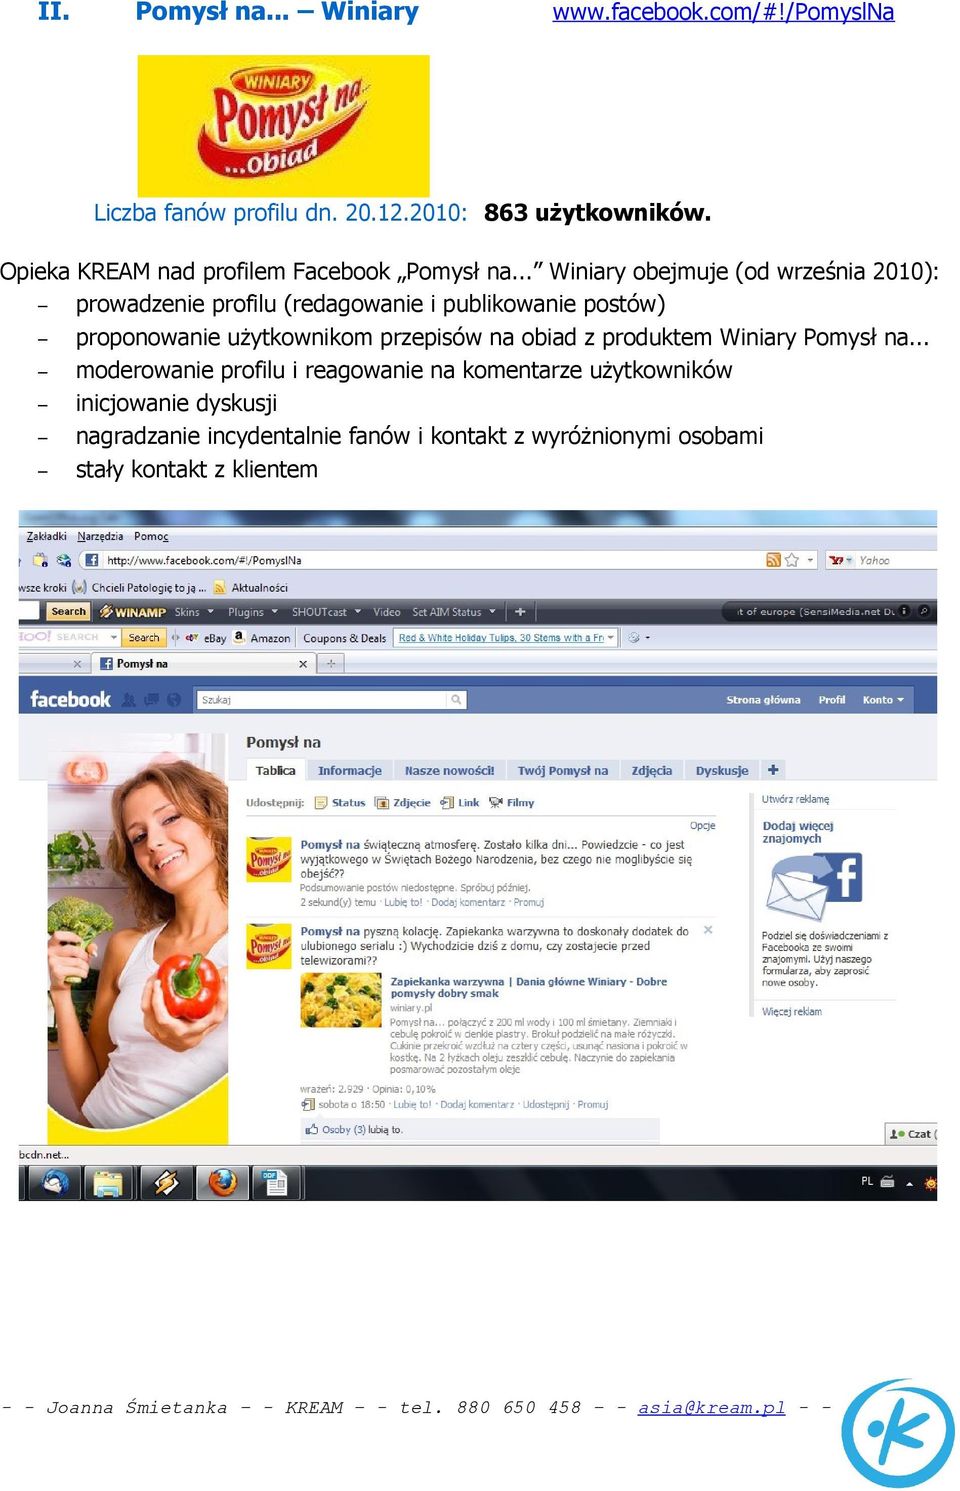 .. Winiary obejmuje (od września 2010): prowadzenie profilu (redagowanie i publikowanie postów) proponowanie użytkownikom